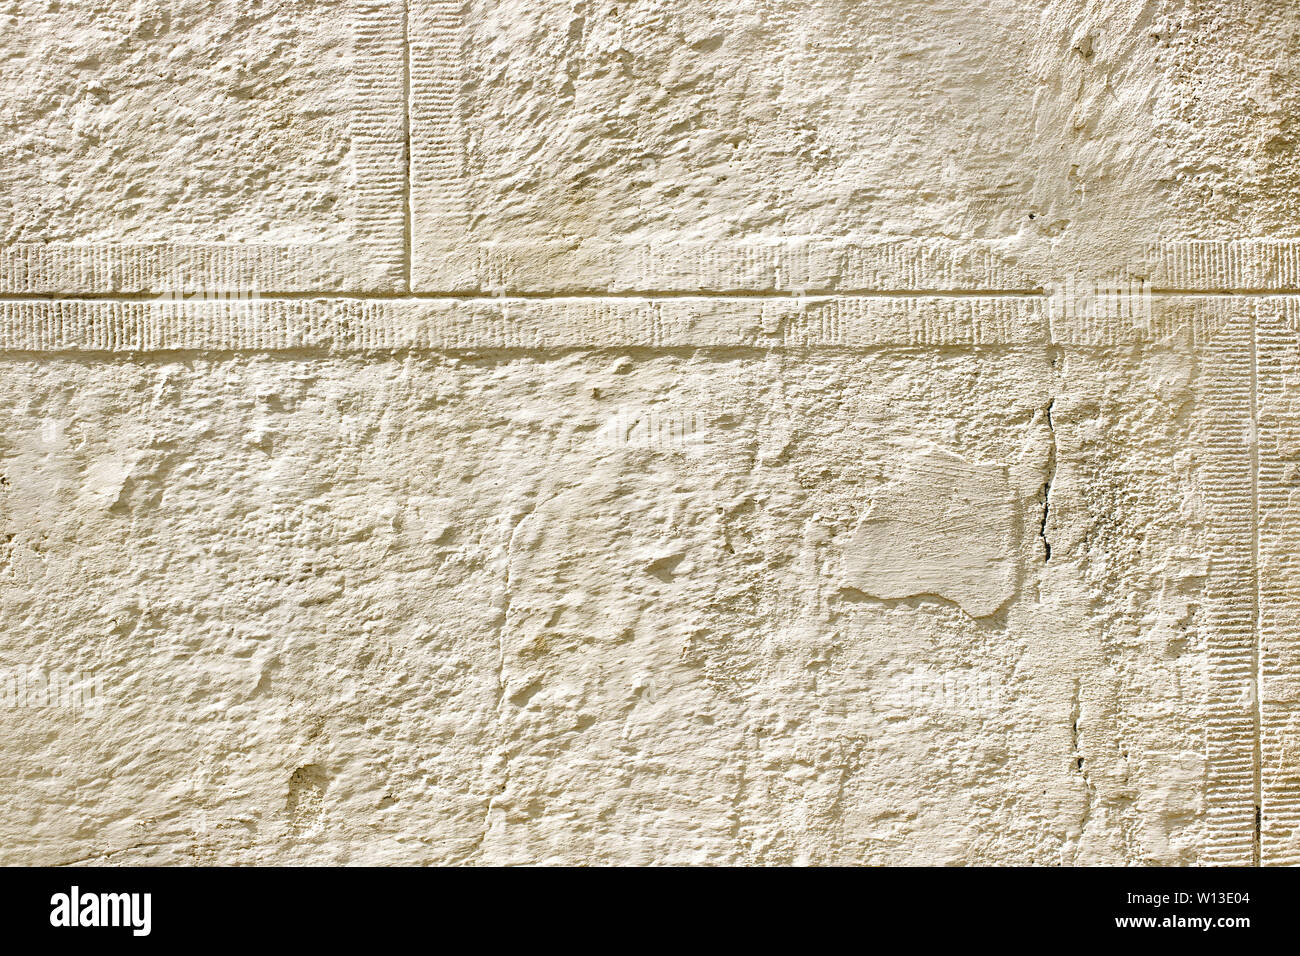 Ancient, résumé, fond beige antique de plâtre, ciment, le gypse. Copy space Banque D'Images